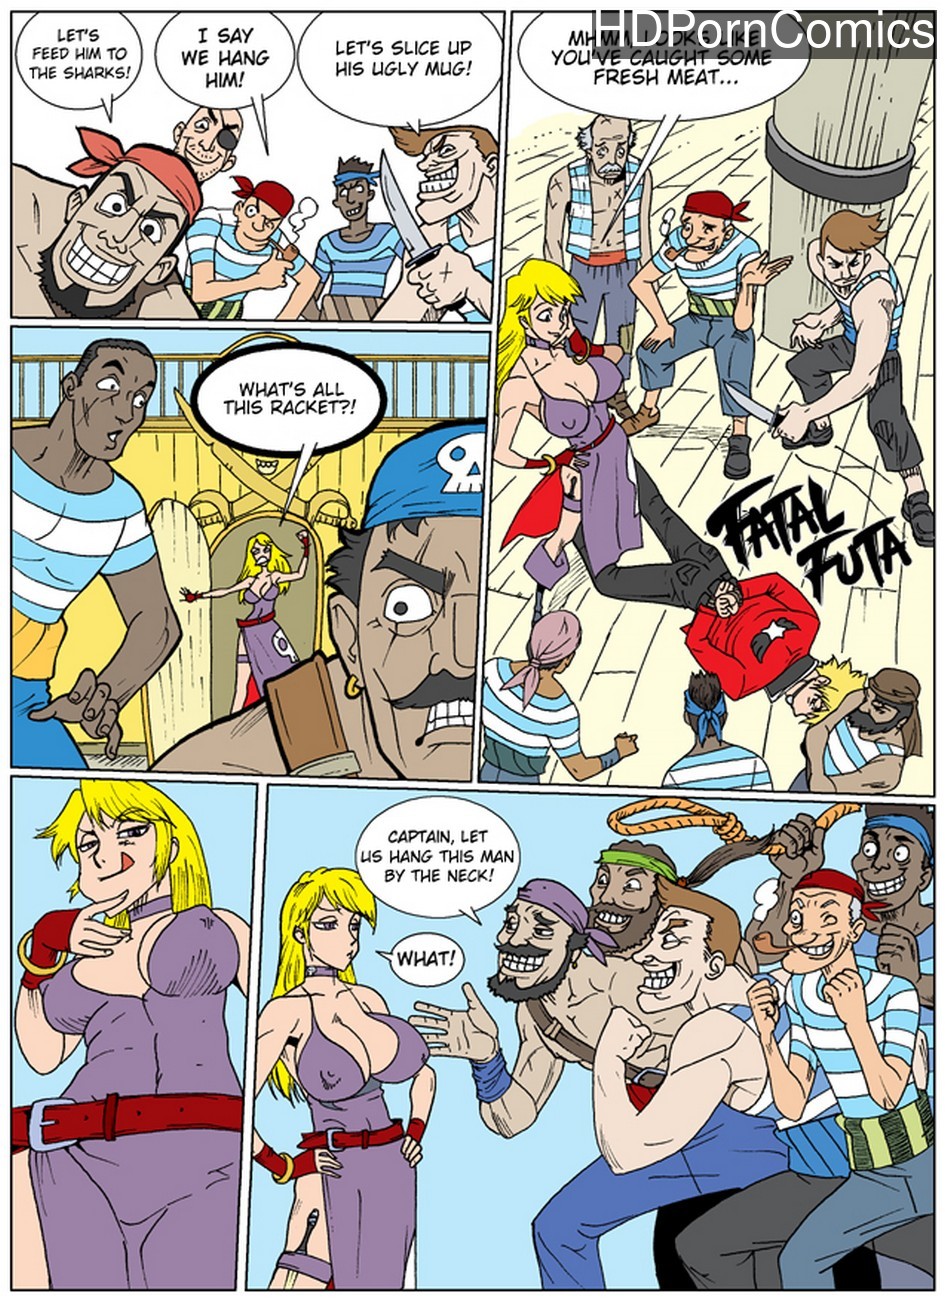 Futa Raping Male - Fatal Futa - B Jenet VS Rock comic porn - HD Porn Comics